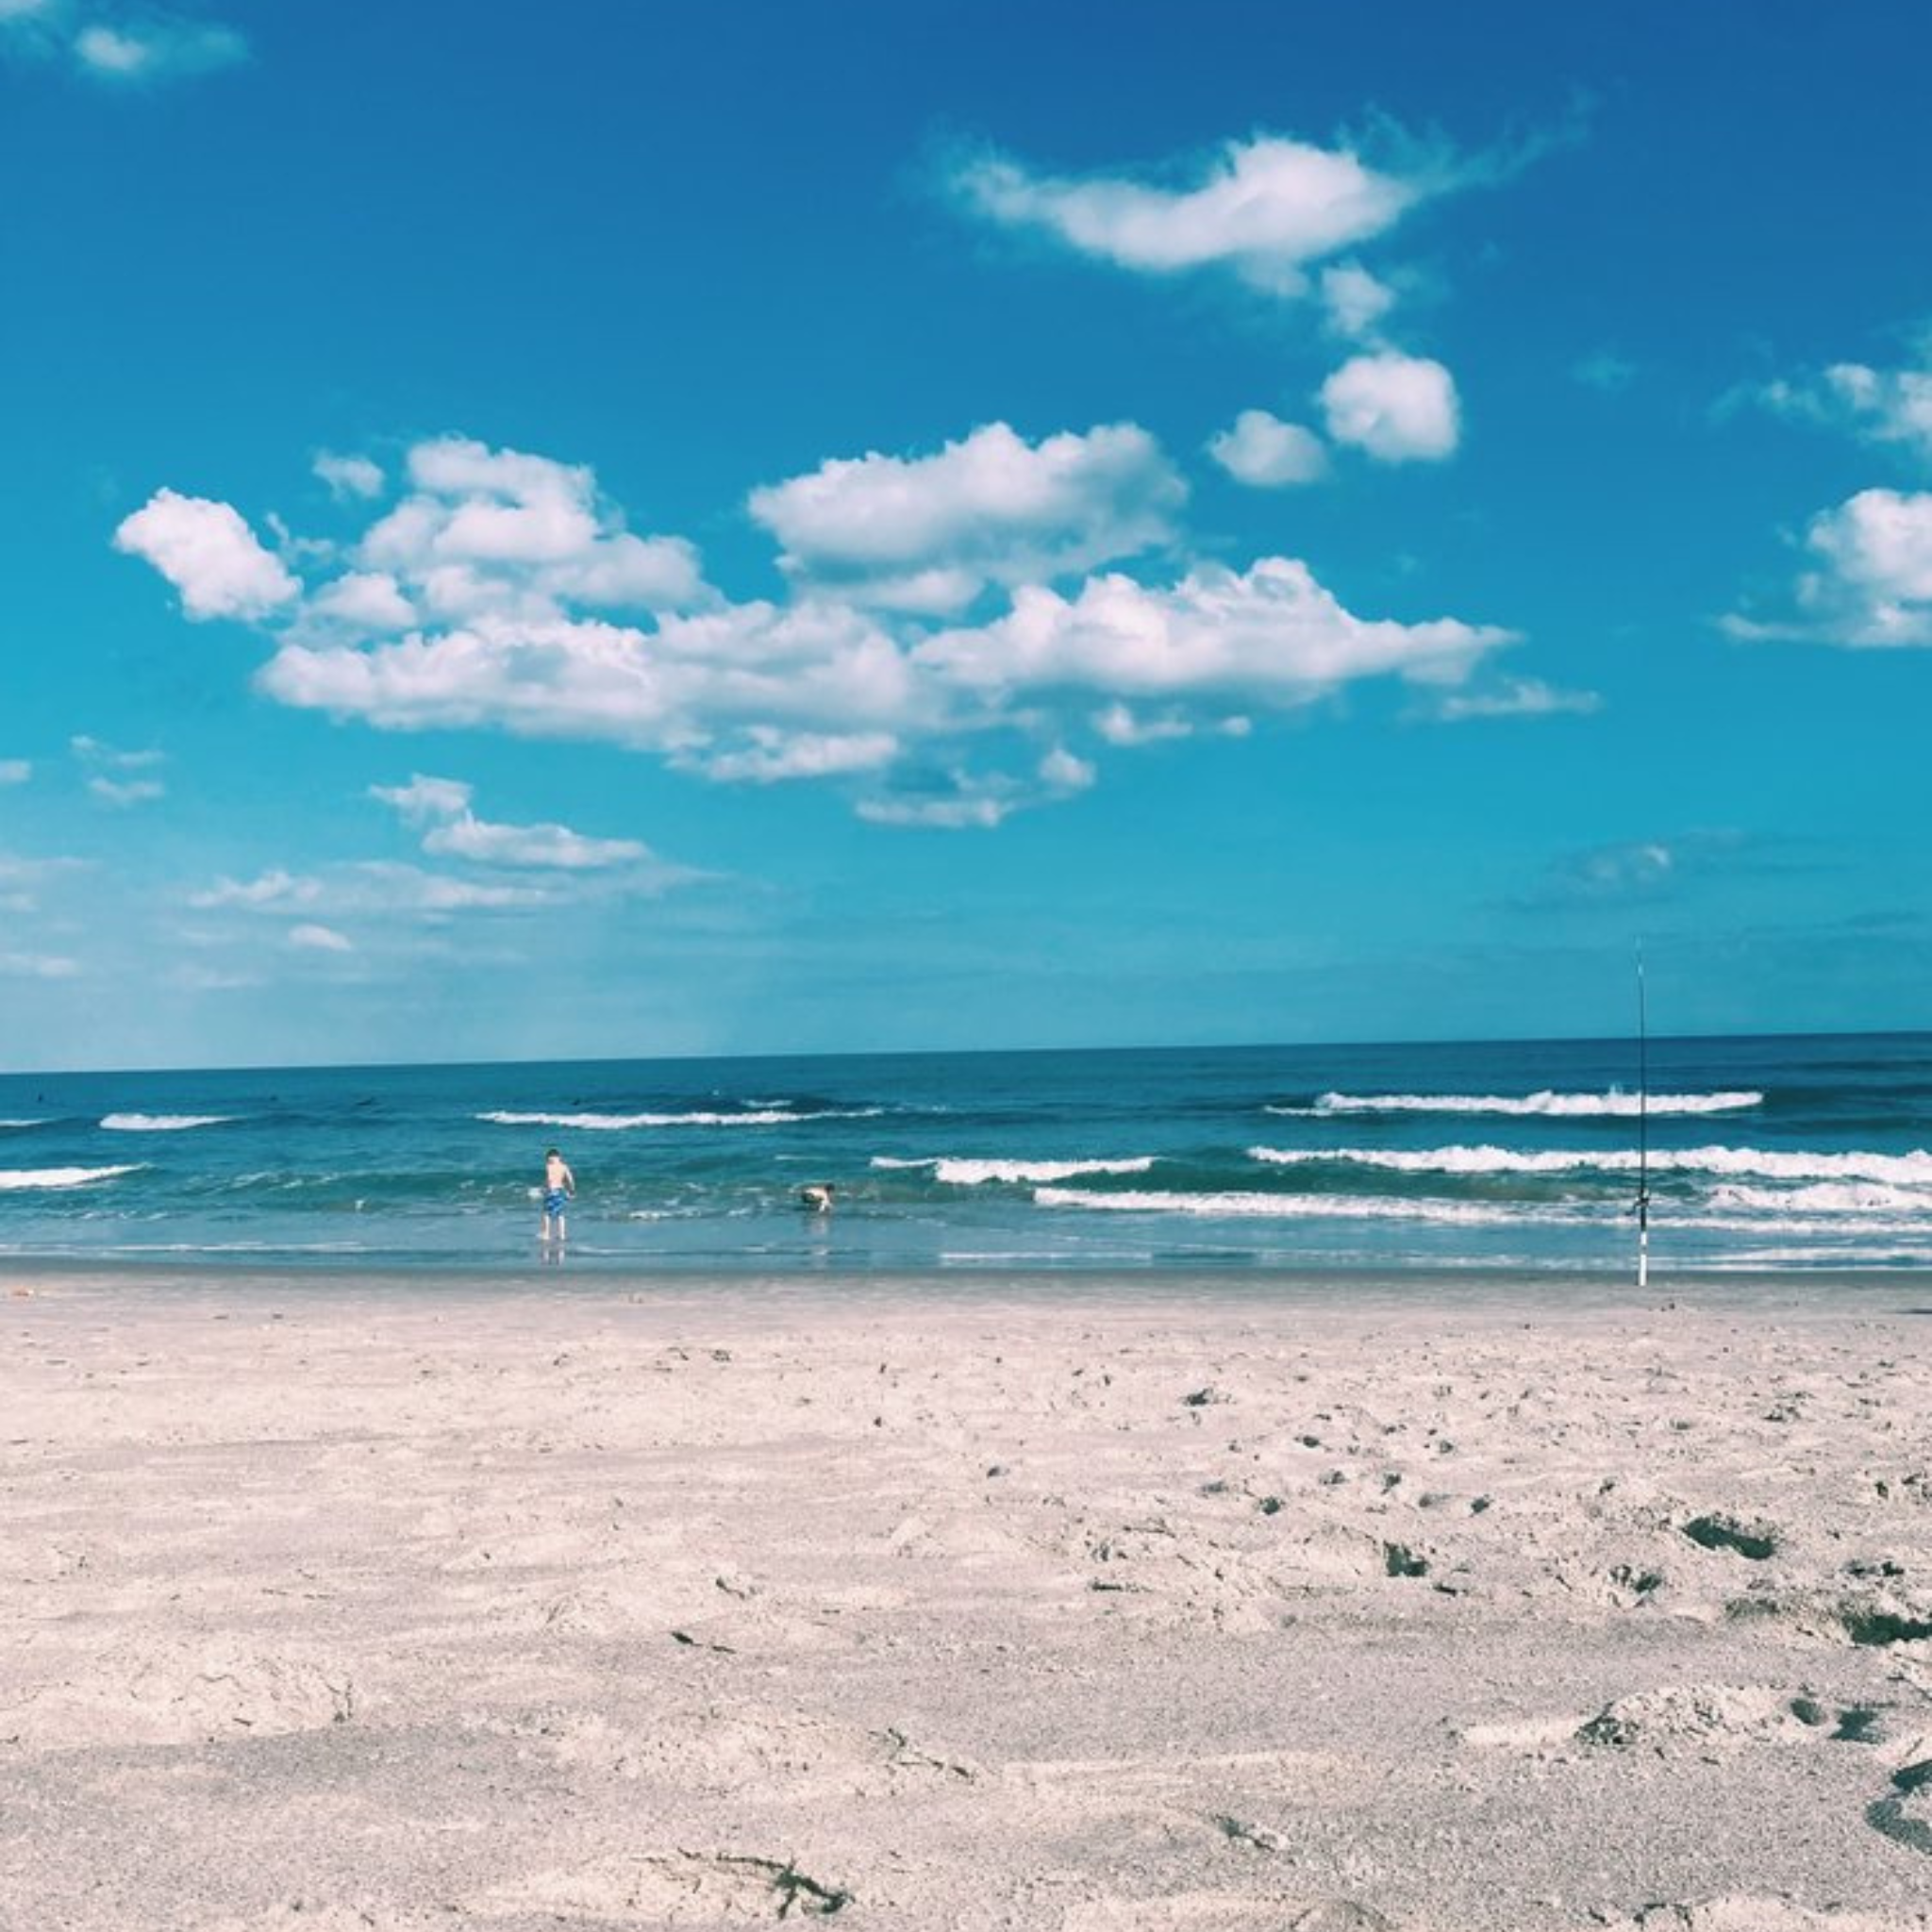 01/05/2022 | Beach Day, Cocoa Beach, FL